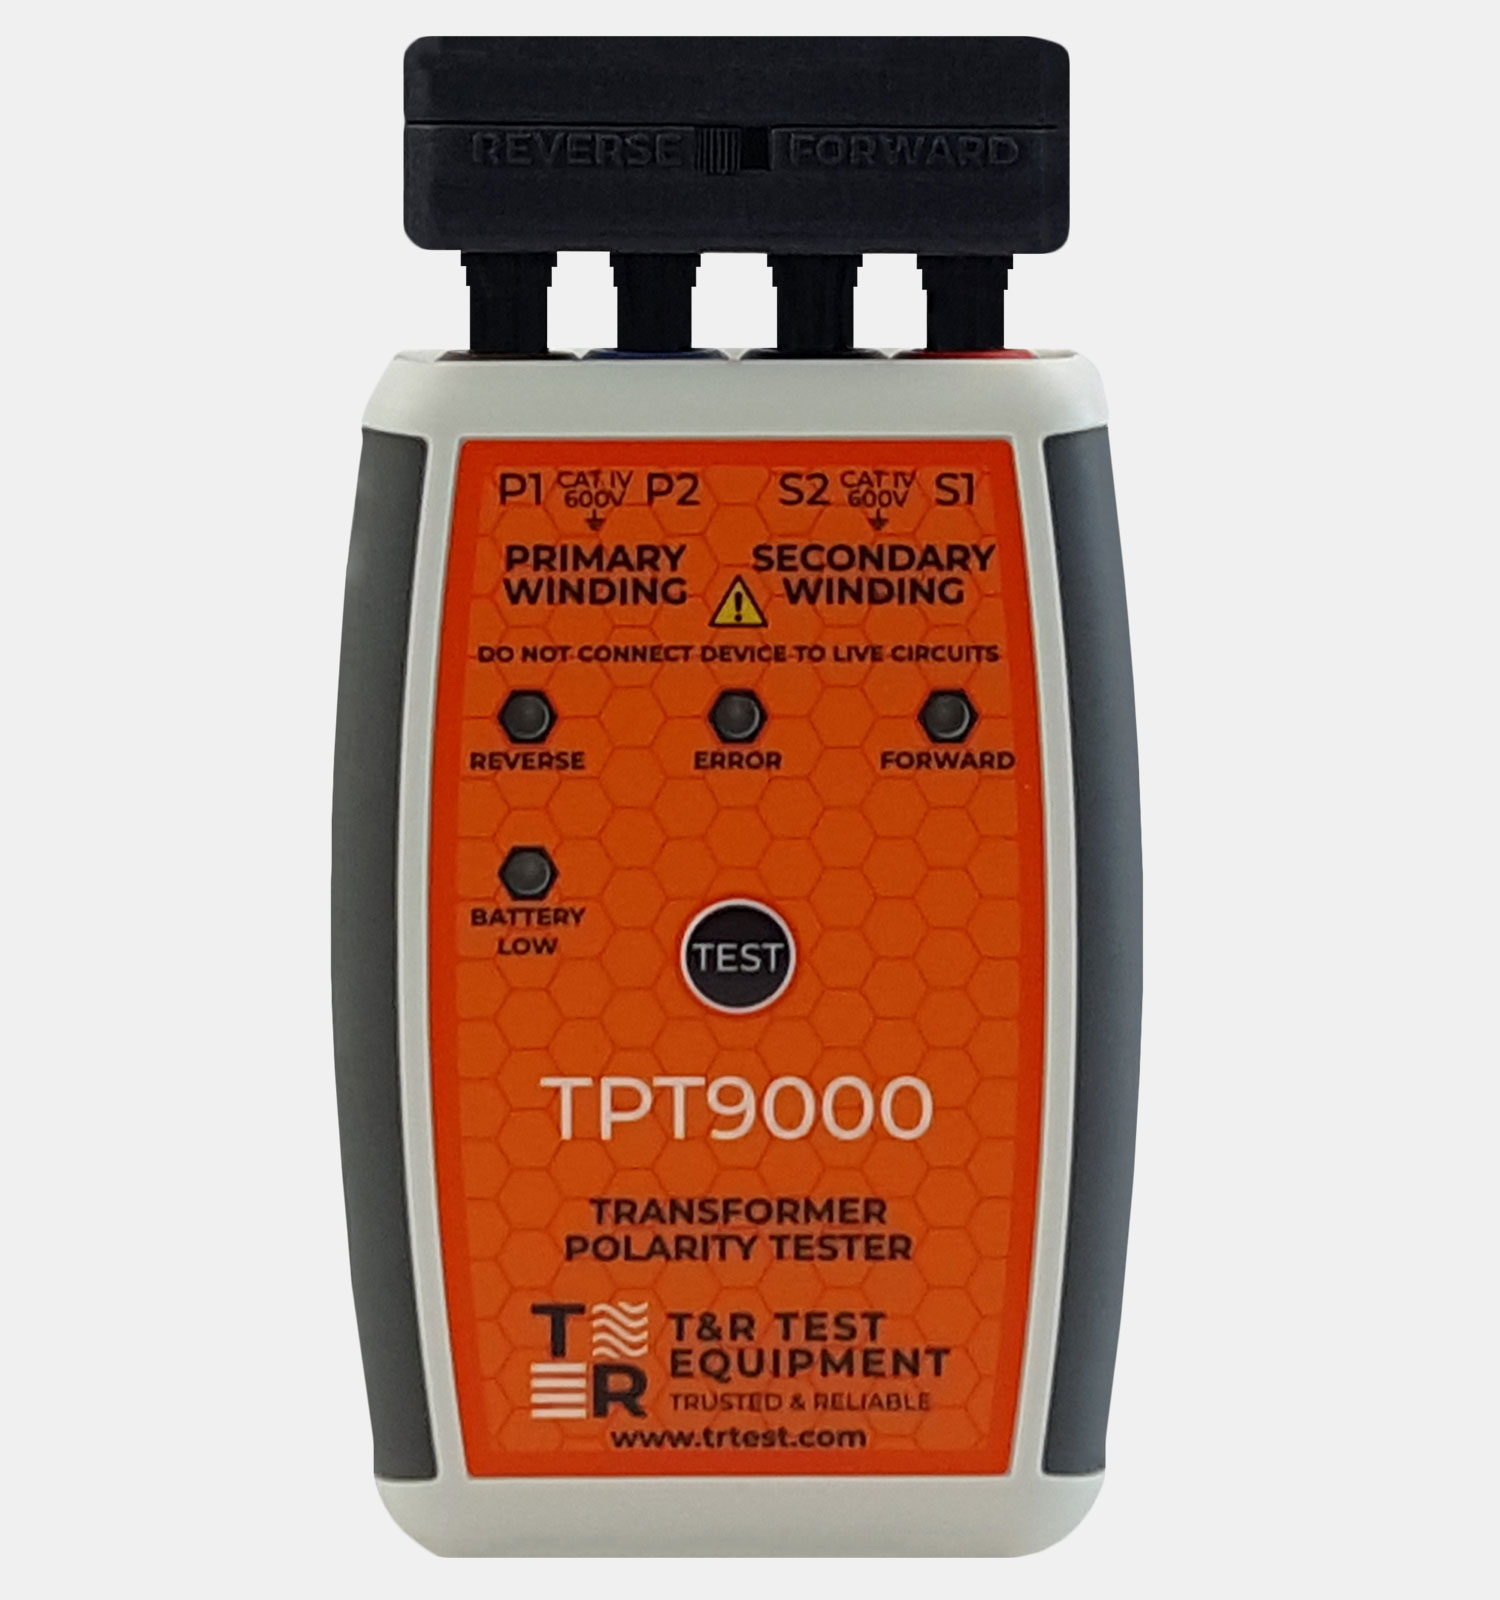 TPT9000 Transformer Polarity Tester